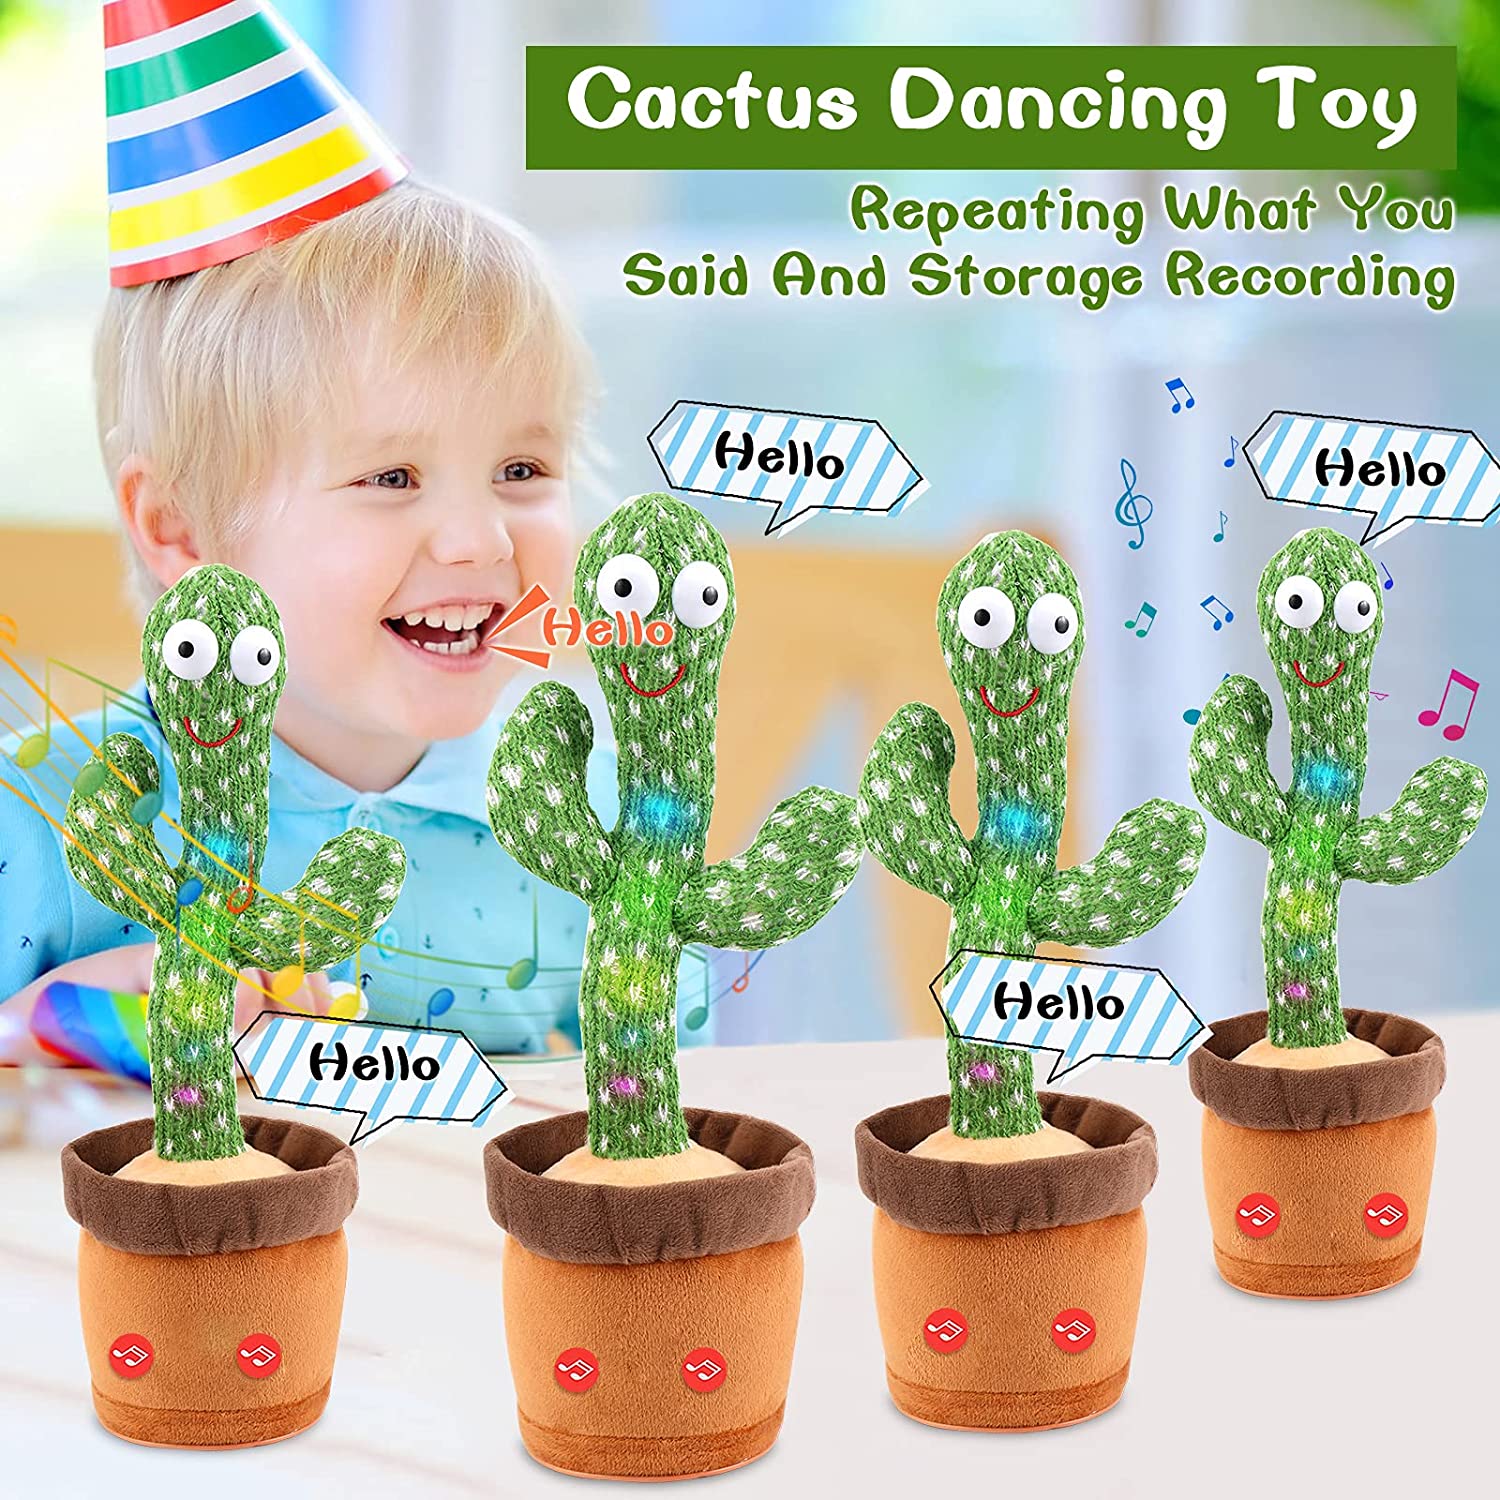 BEAUXI Cactus Qui Danse et Répète, Cow Boy Cactus Chantant et Dansant,  Jouet de Danse Drôle pour Les Enfants,Cactus de Danse électronique de